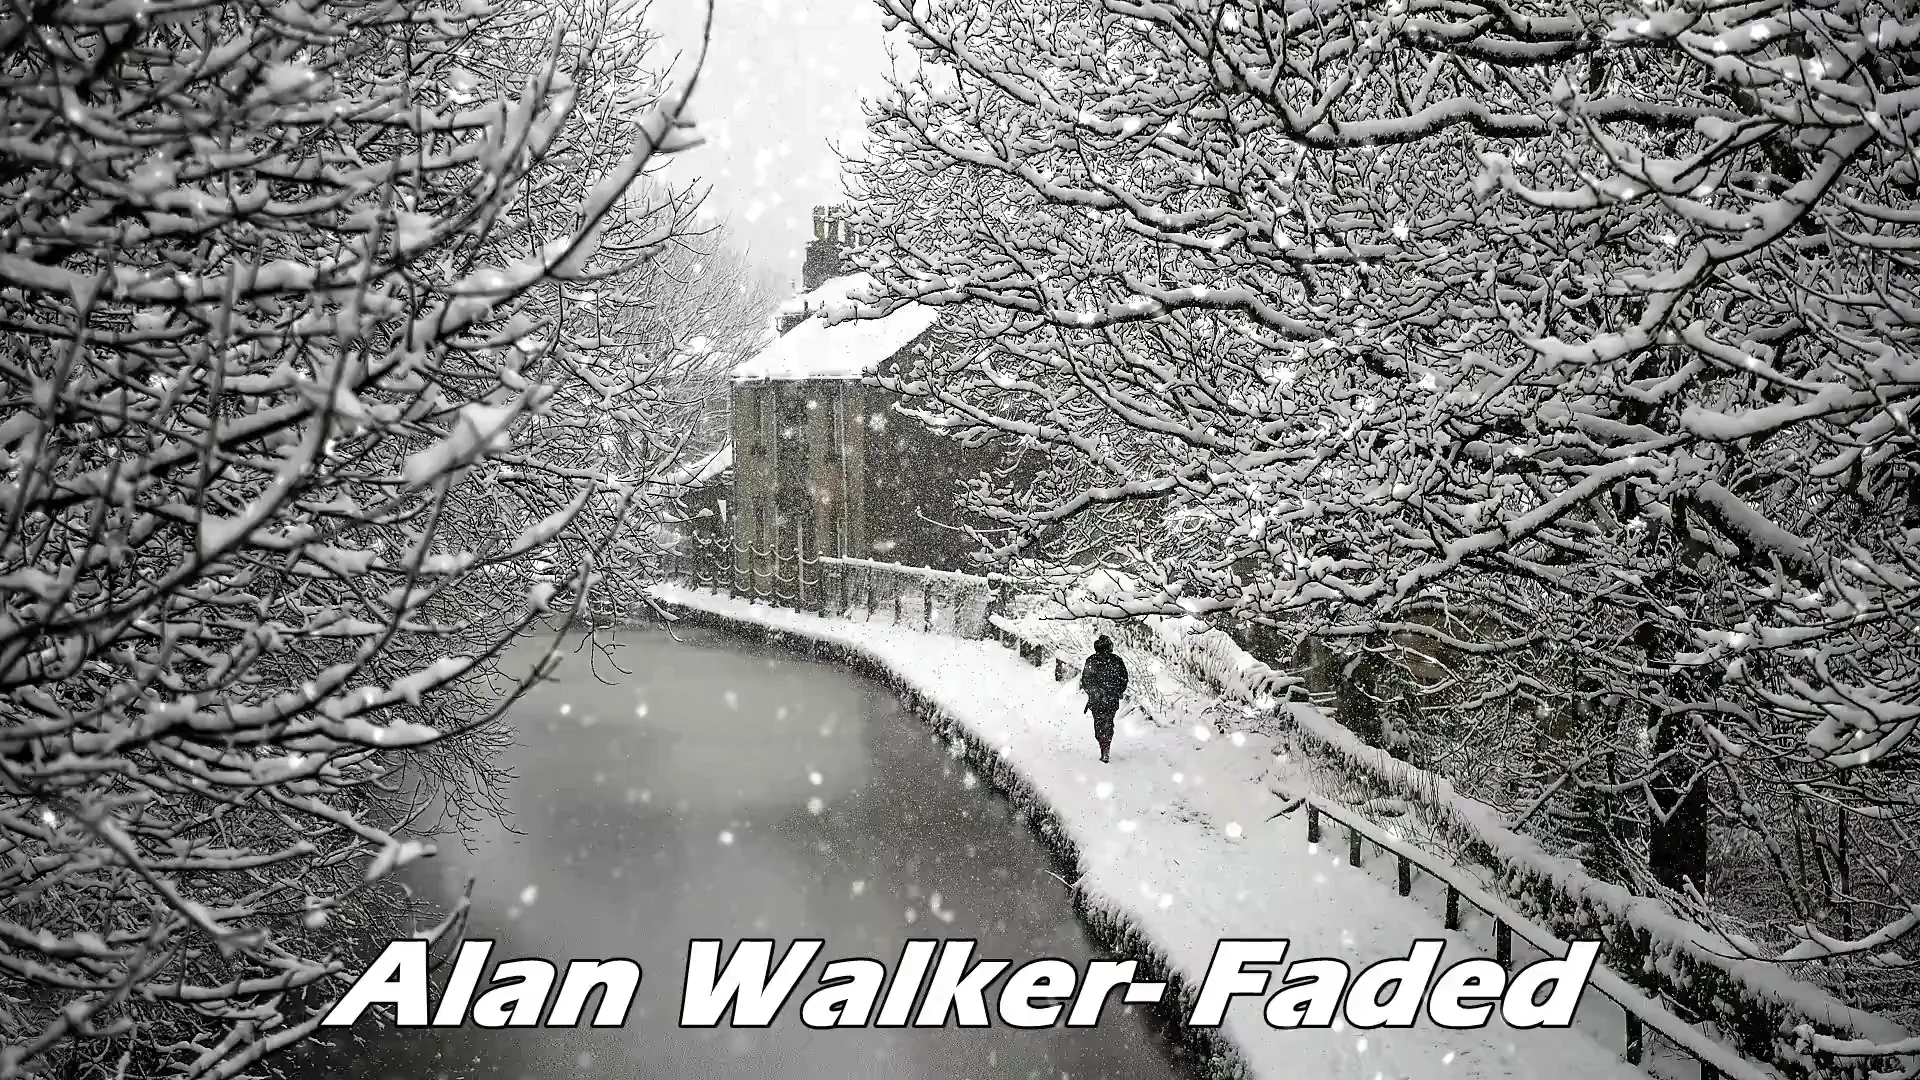 Alan Walker on Vimeo